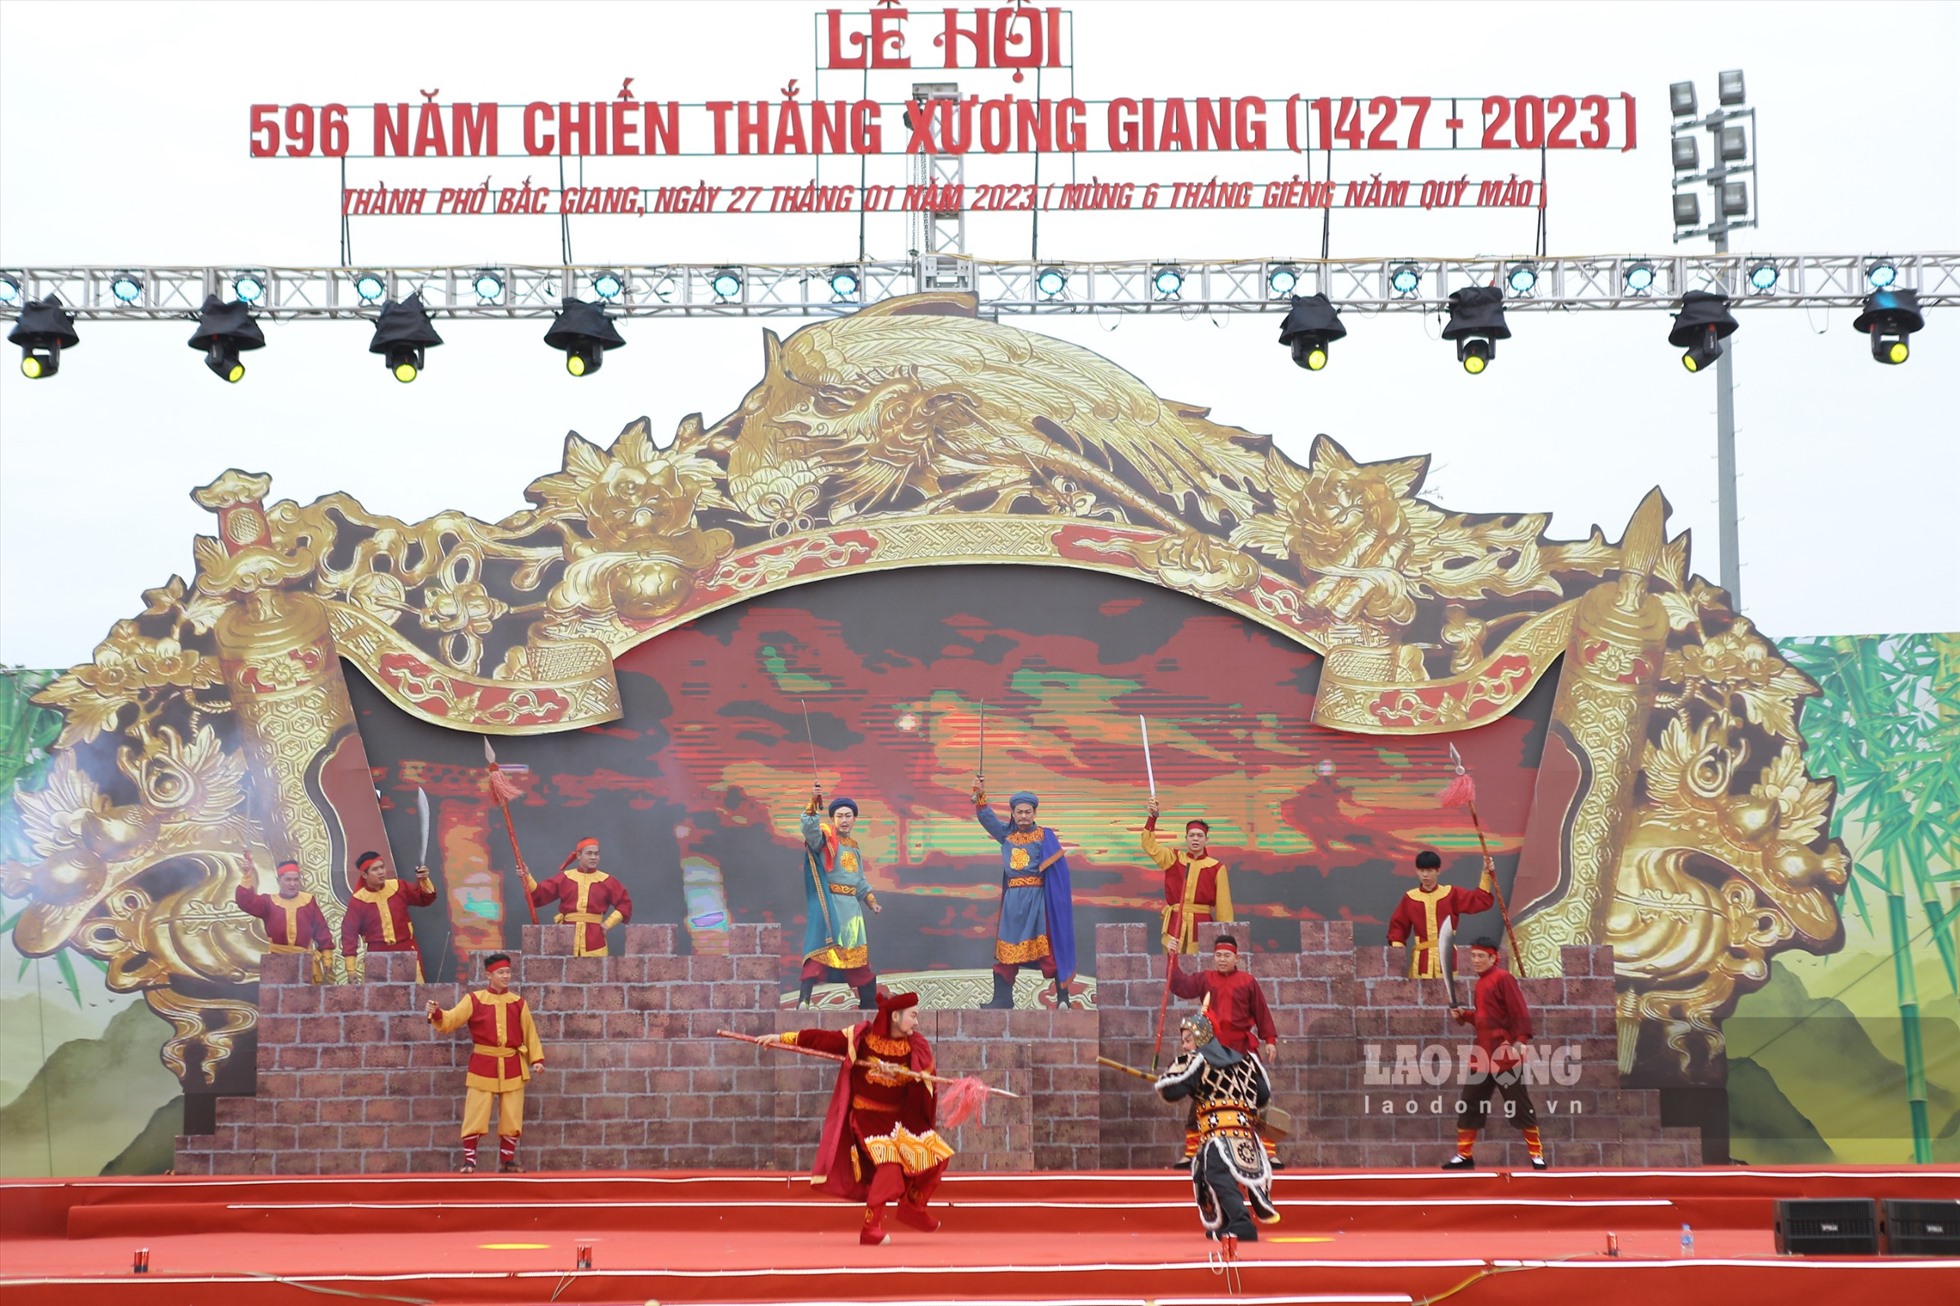 Cứ mỗi dịp Tết đến, xuân về, lễ hội đã thu hút đông đảo người dân, du khách gần xa về dự và được đắm mình trong không gian văn hóa của vùng đất Kinh Bắc - Bắc Giang